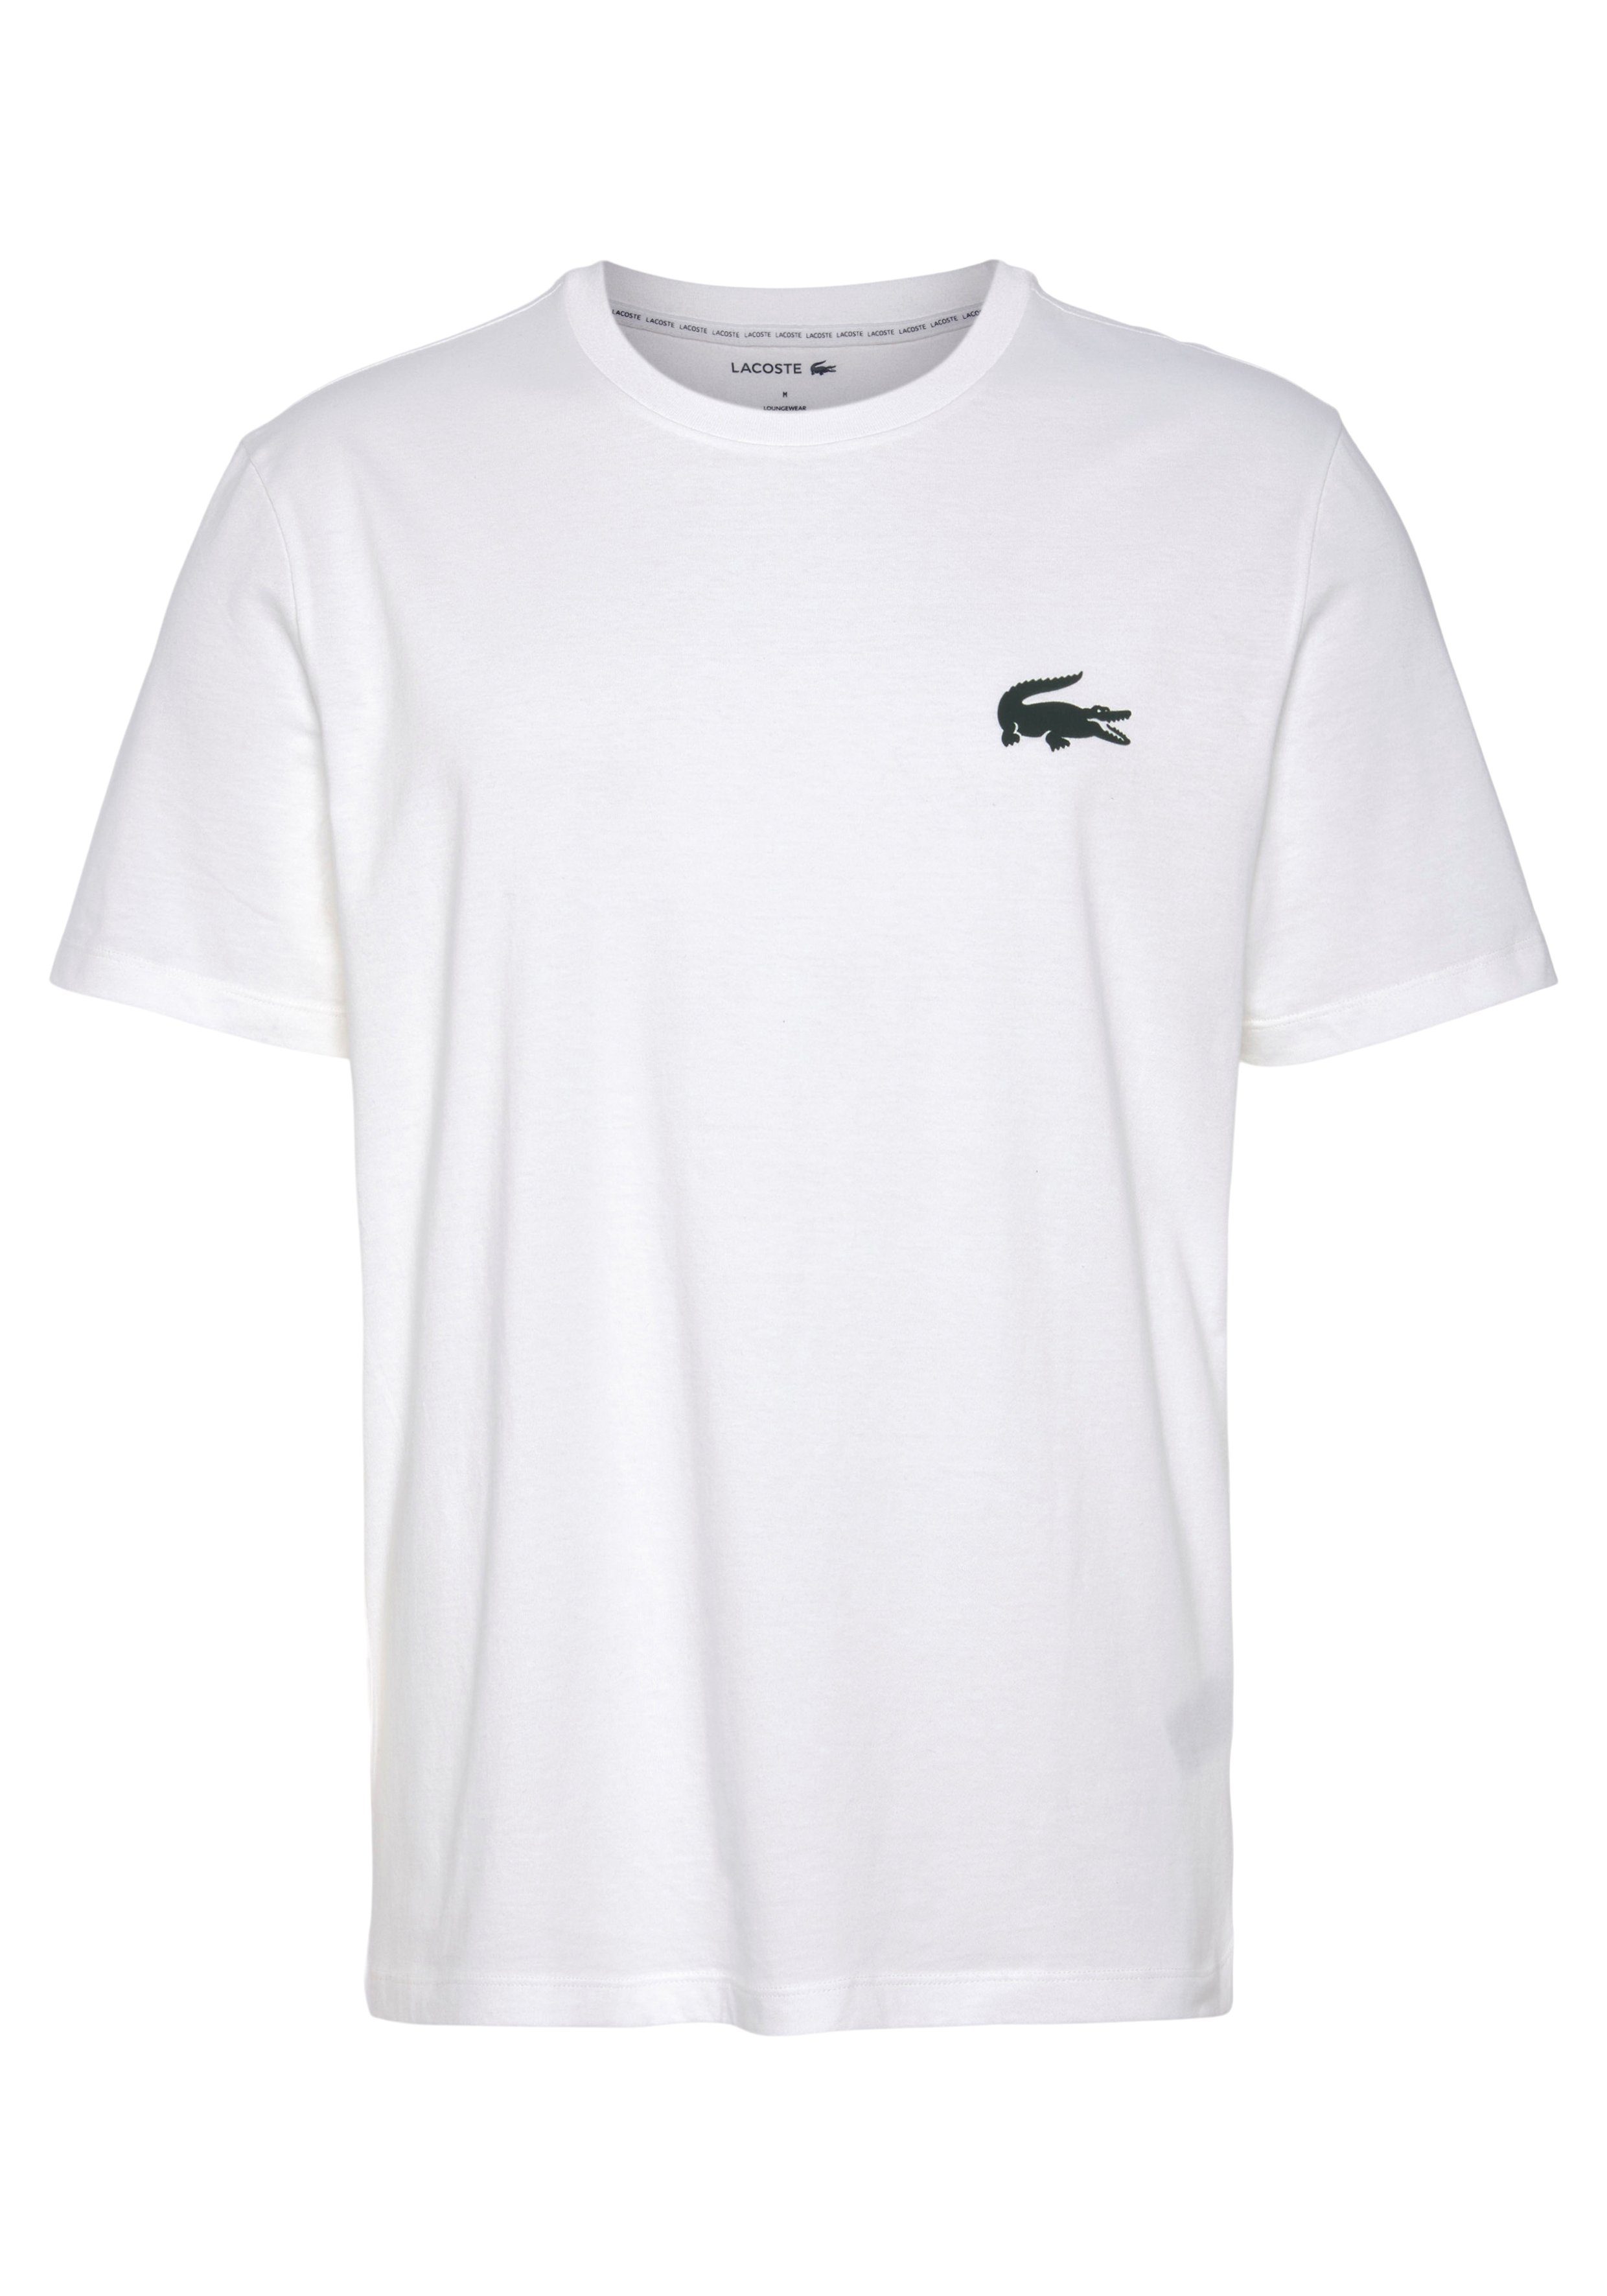 Lacoste T-Shirt mit großem Krokodillogo auf der Brust weiß | T-Shirts